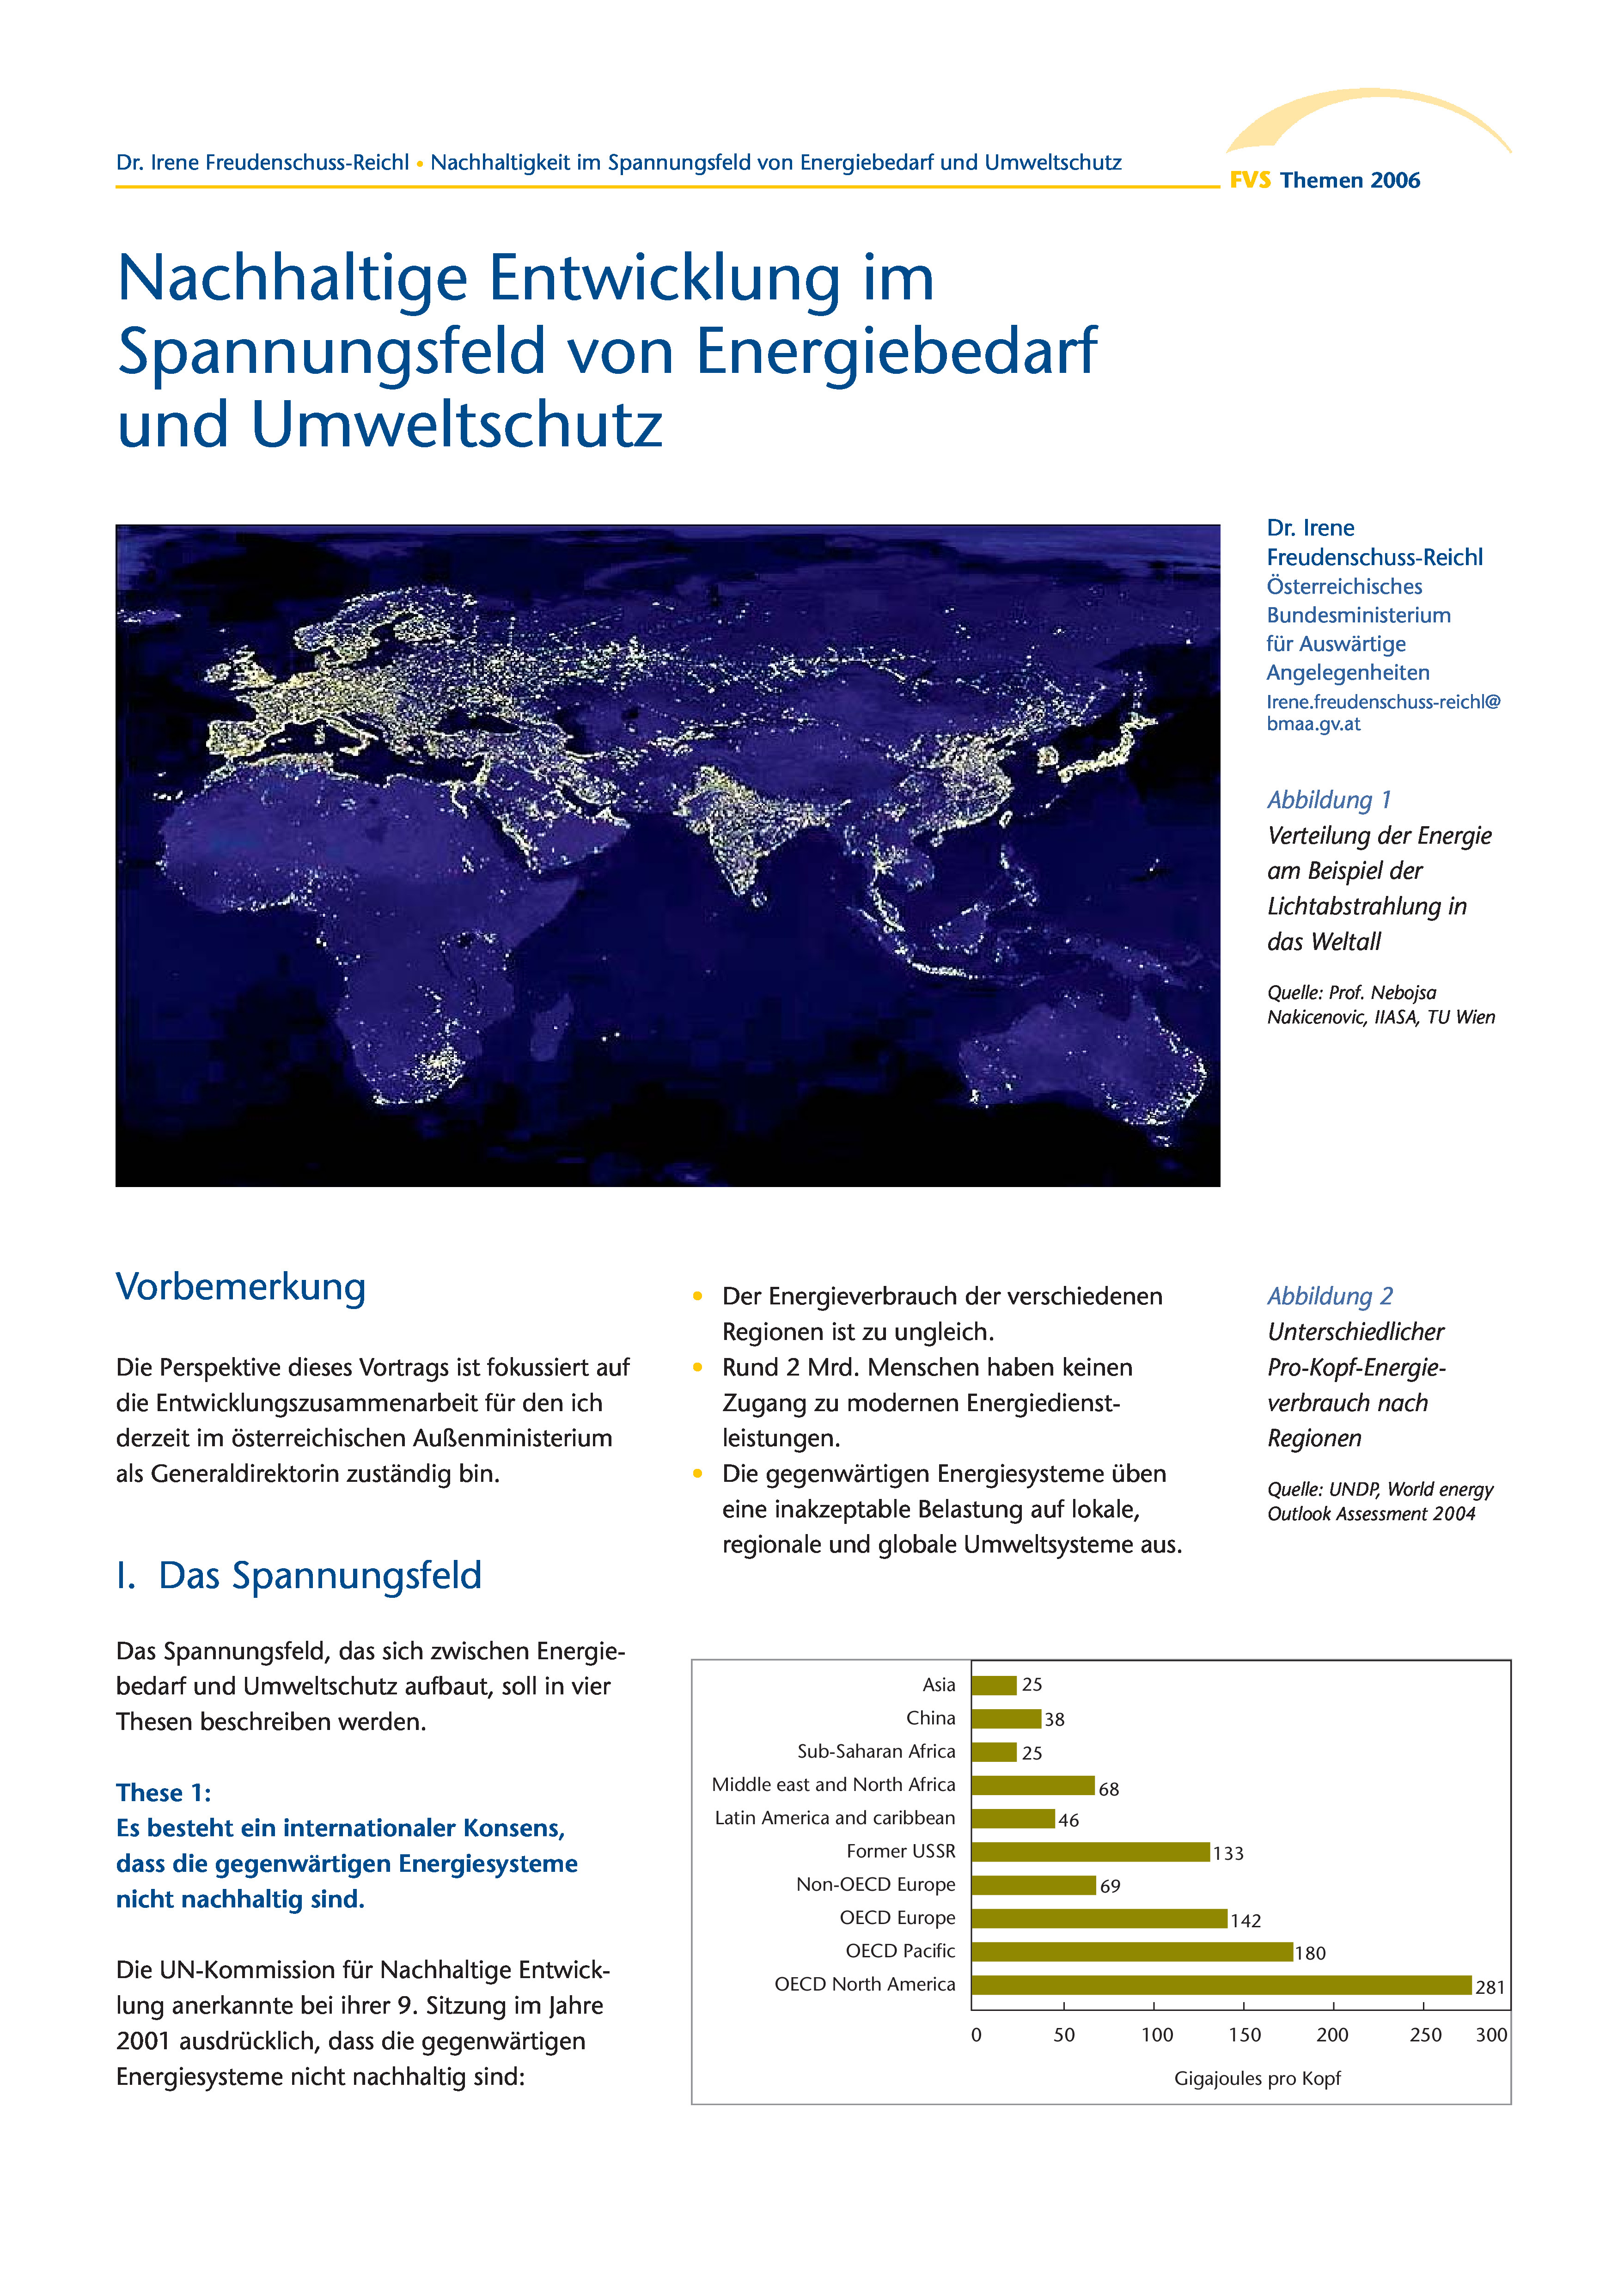 Themen 2006: Forschung und Innovation für eine nachhaltige Energieversorgung